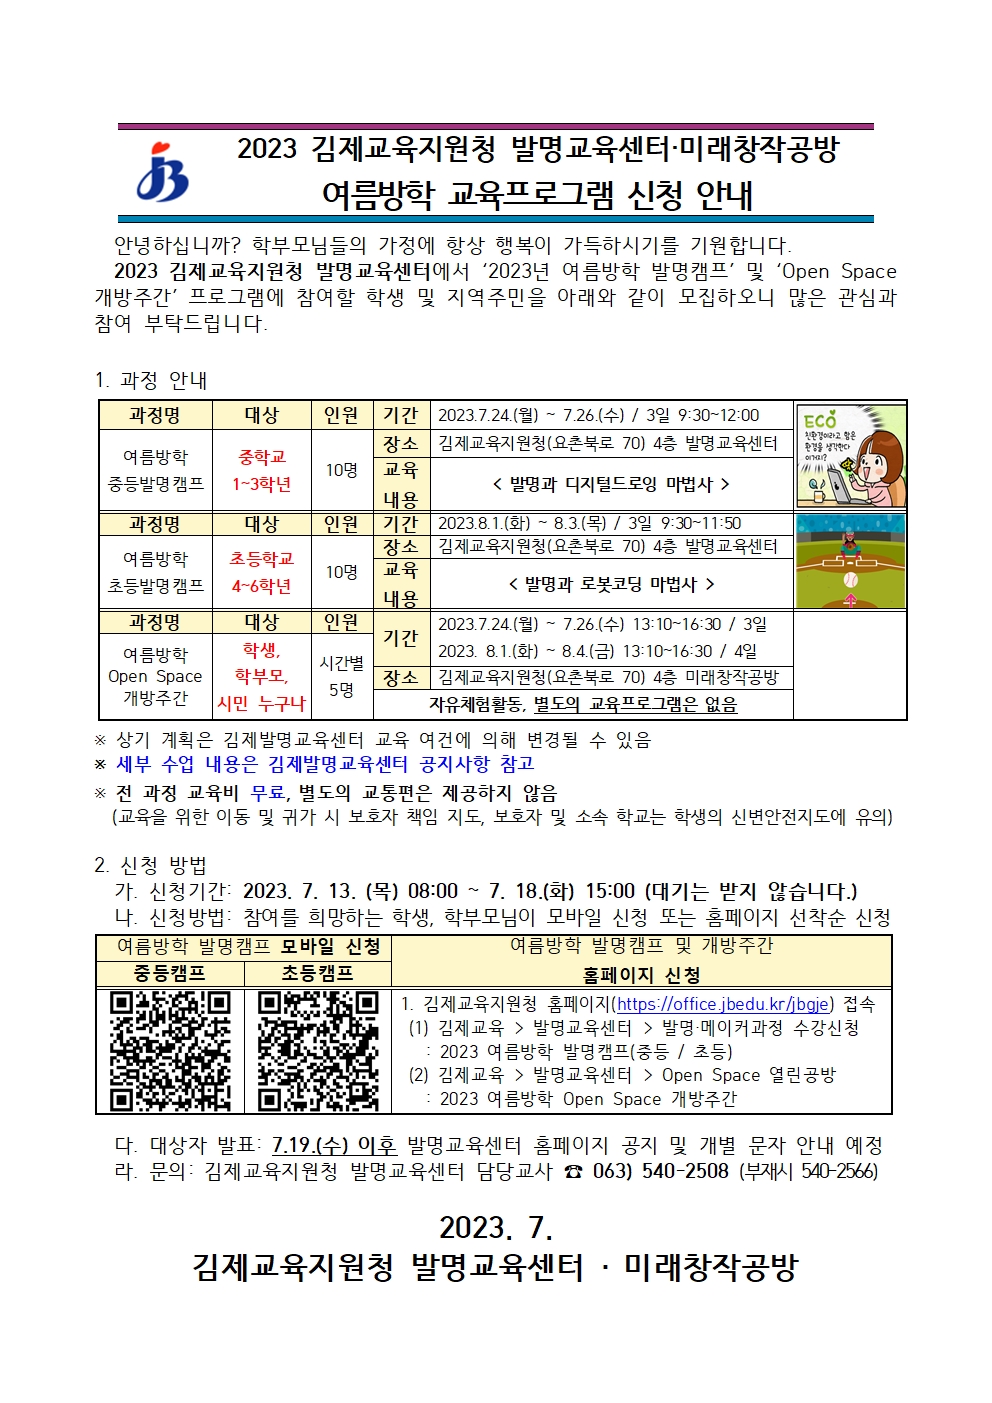 2023 김제발명교육센터 미래창작공방 여름방학 교육 프로그램 신청 안내장001